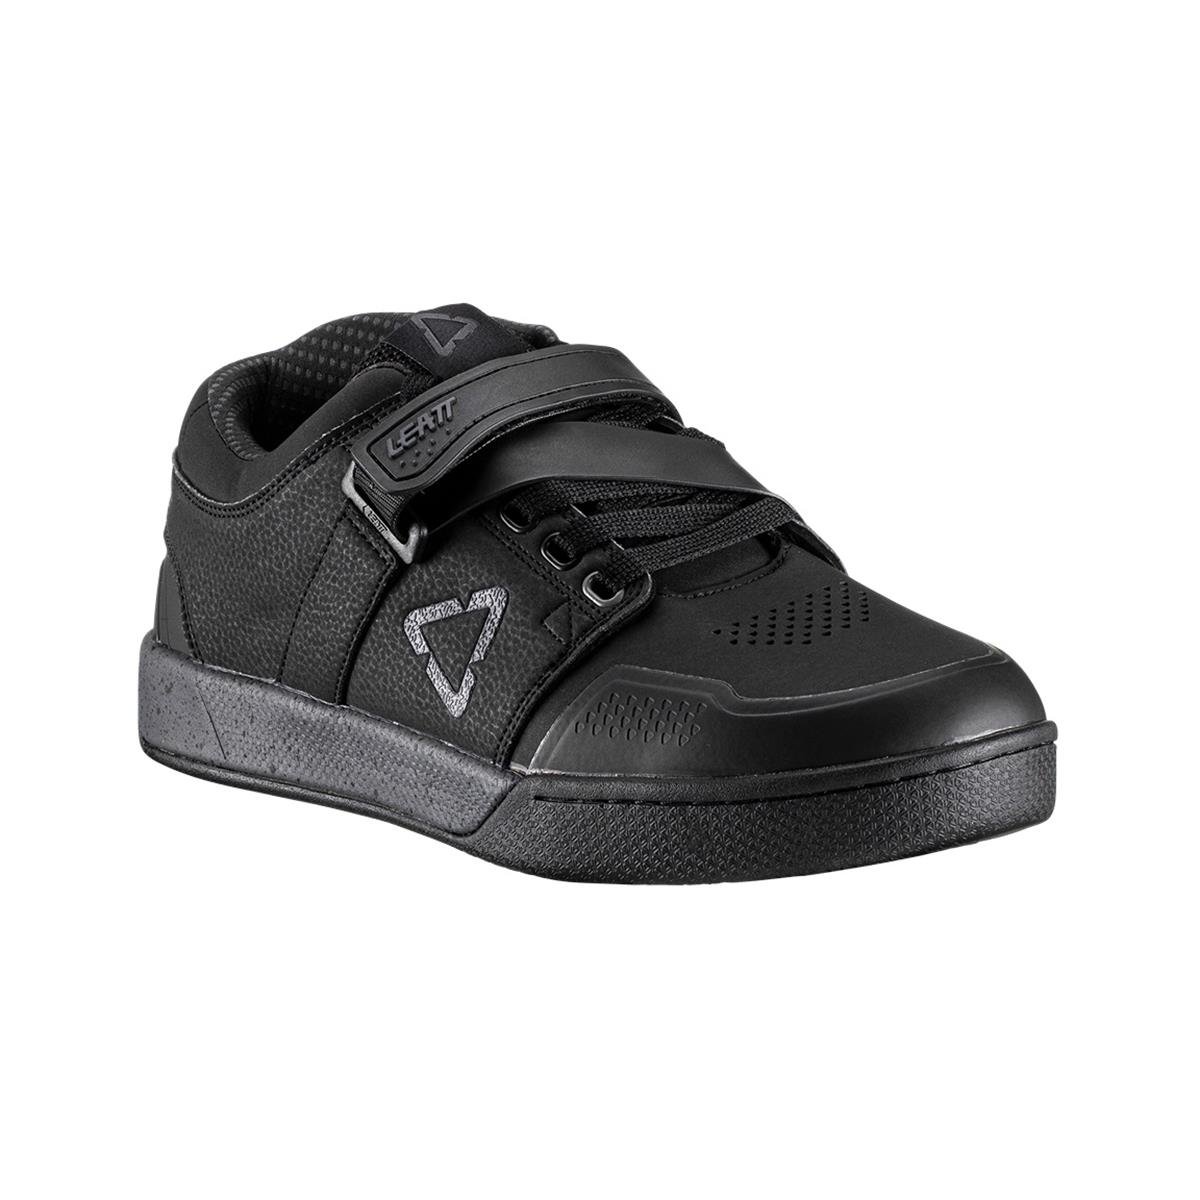 Leatt Chaussures VTT 4.0 Clip Noir